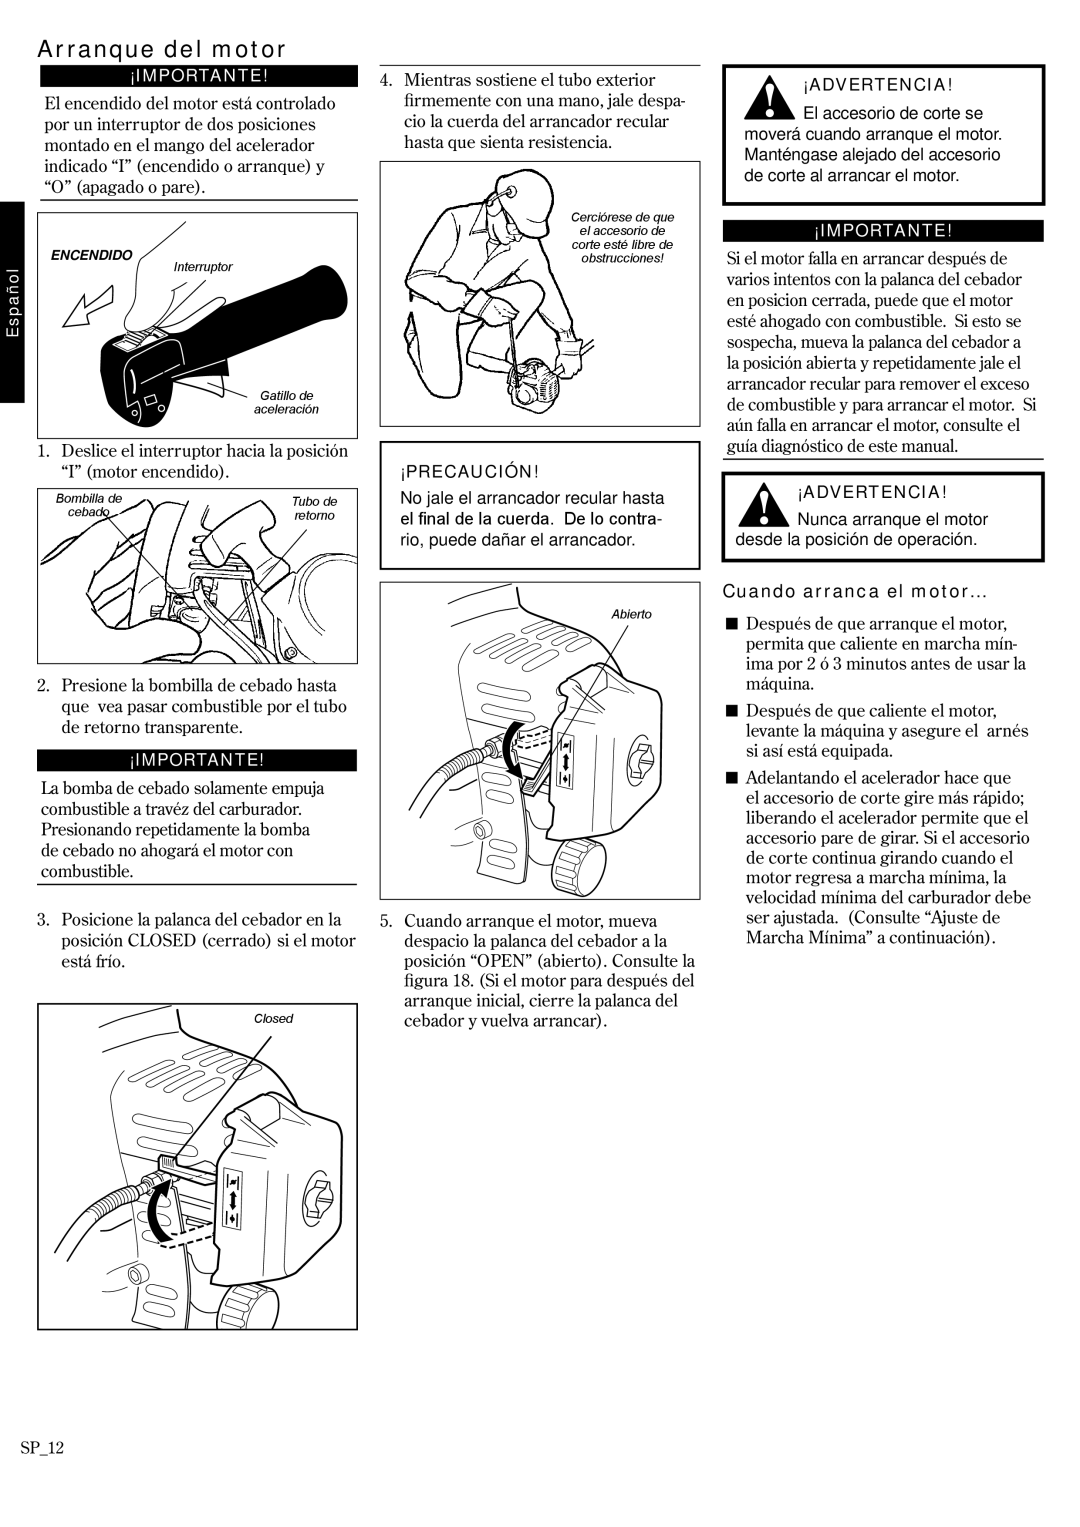 Shindaiwa 62888-94013, P231 manual Arranque del motor, Cuando arranca el motor…, ¡Importante, ¡Advertencia, ¡Precaución 